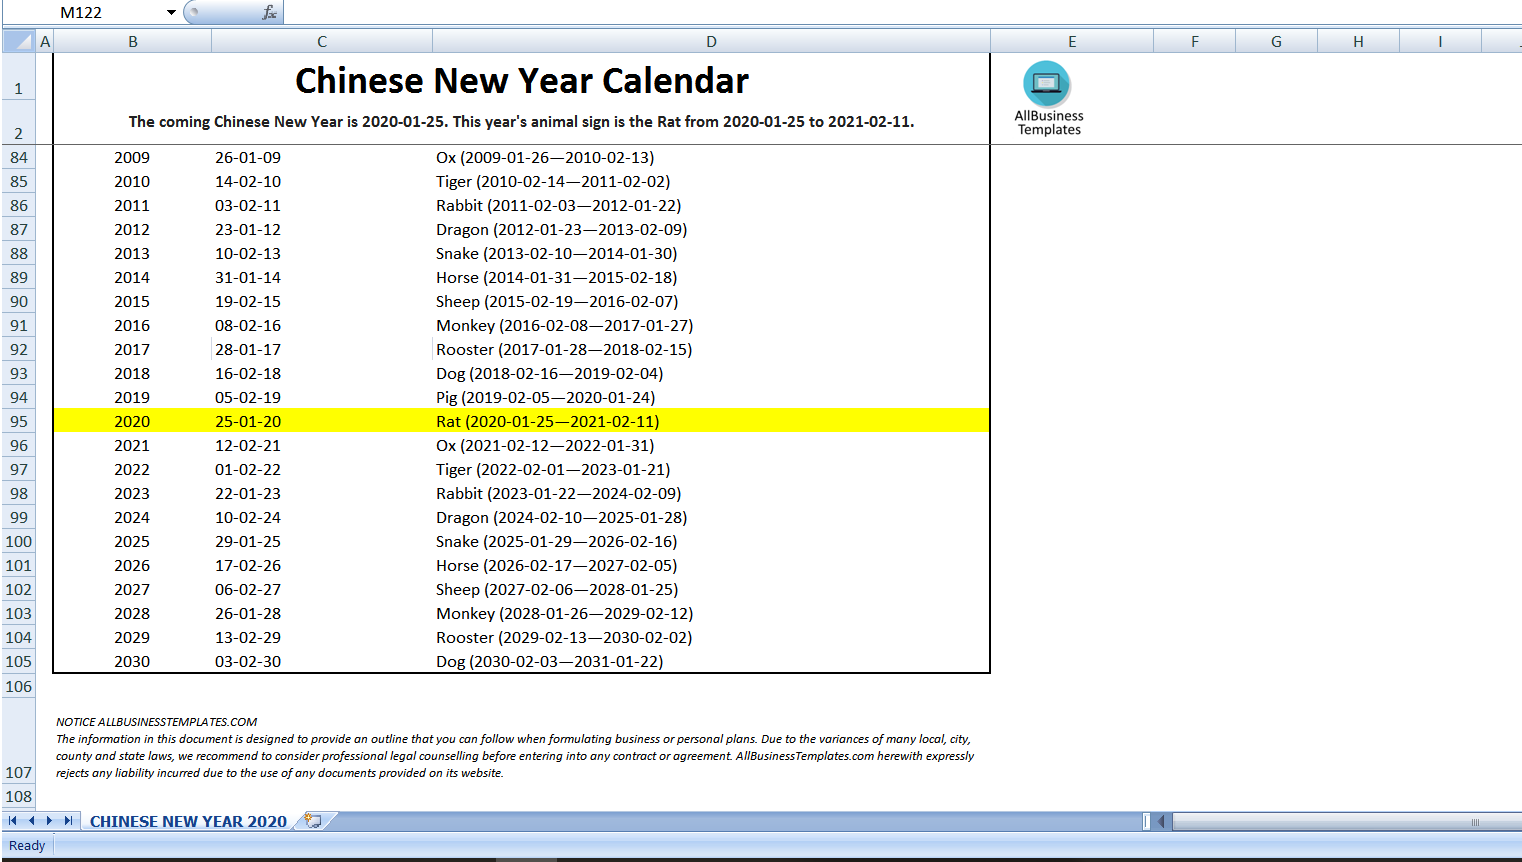 Chinese New Year 2020 Calendar main image